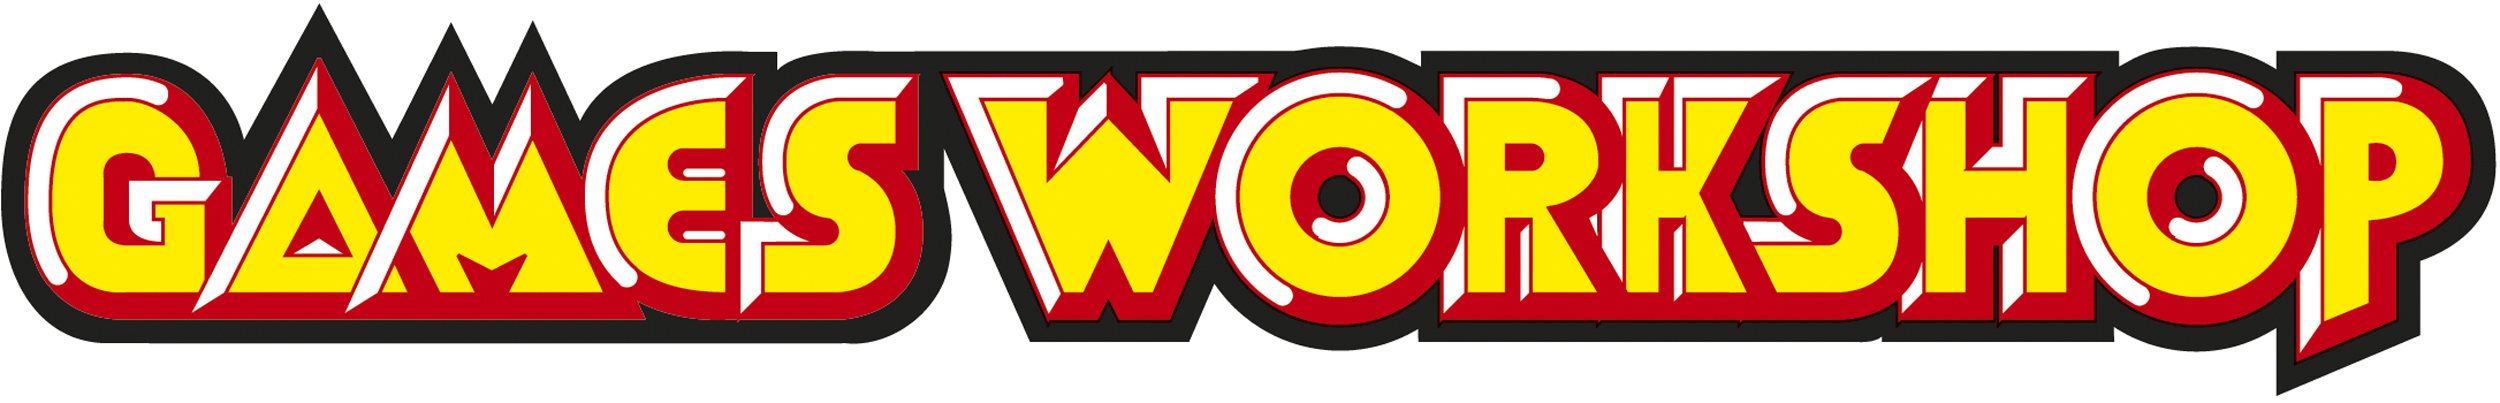 Games Workshop 1line Logo 1